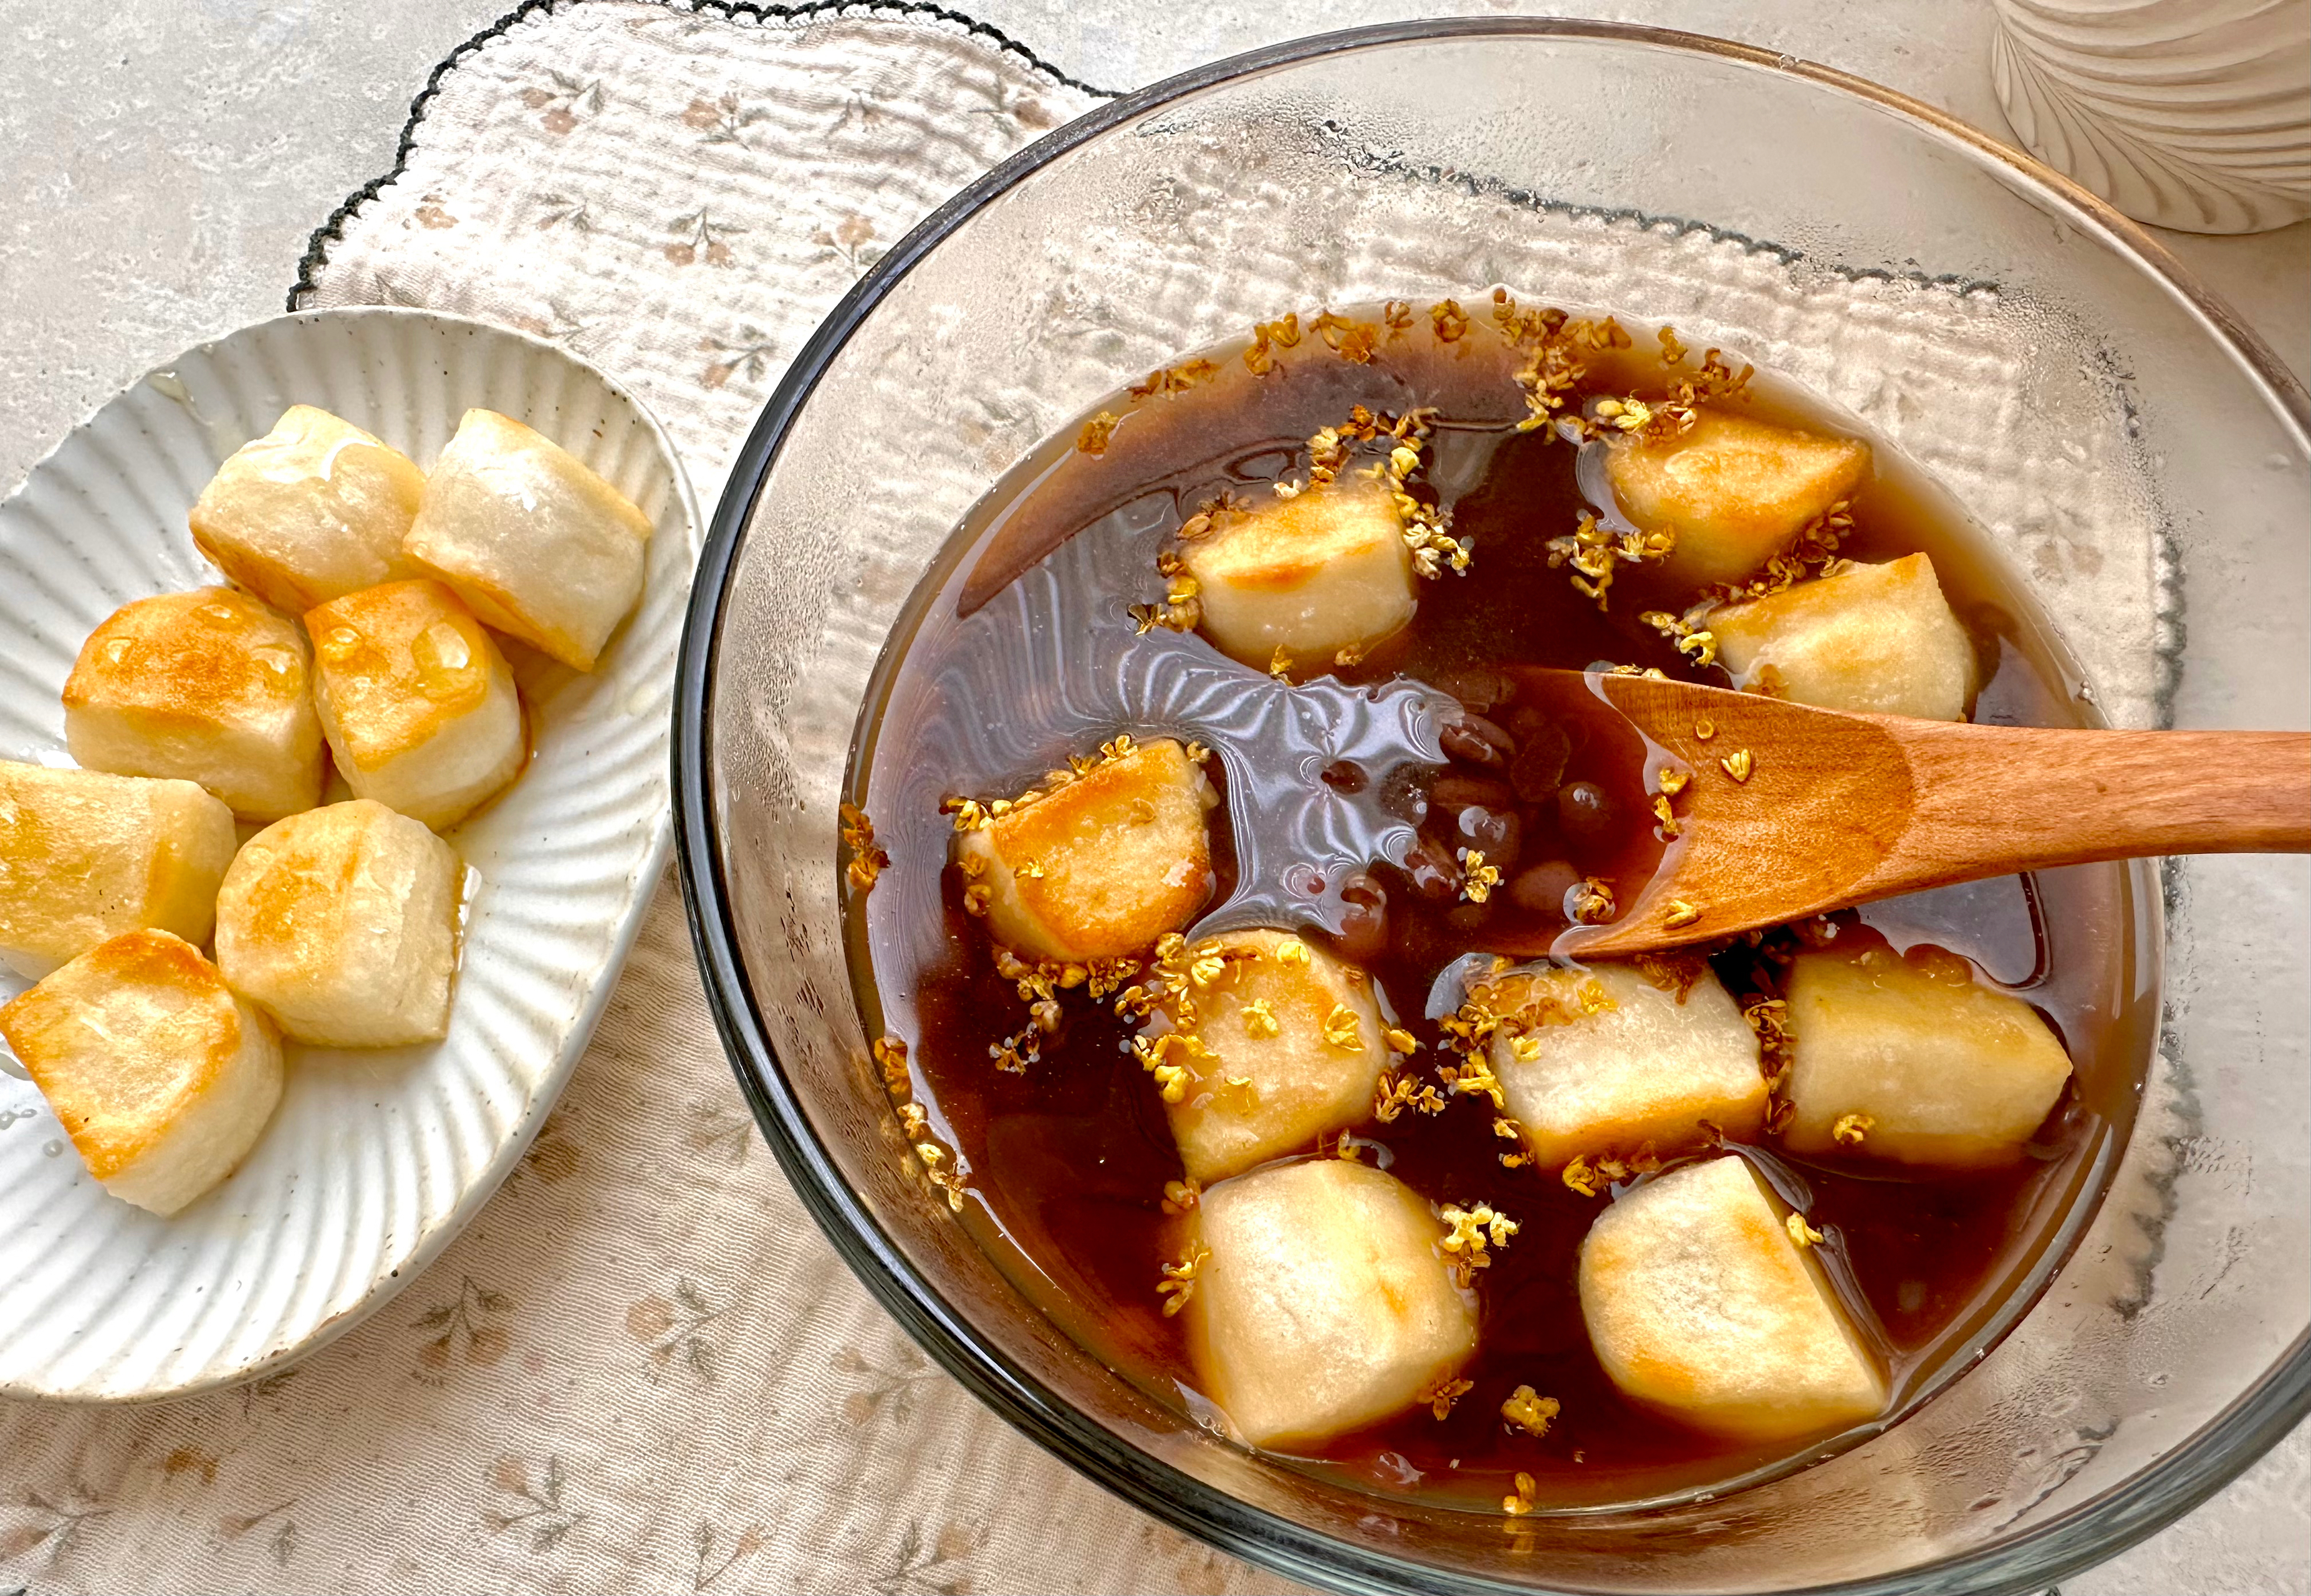 日式の烤年糕红豆汤